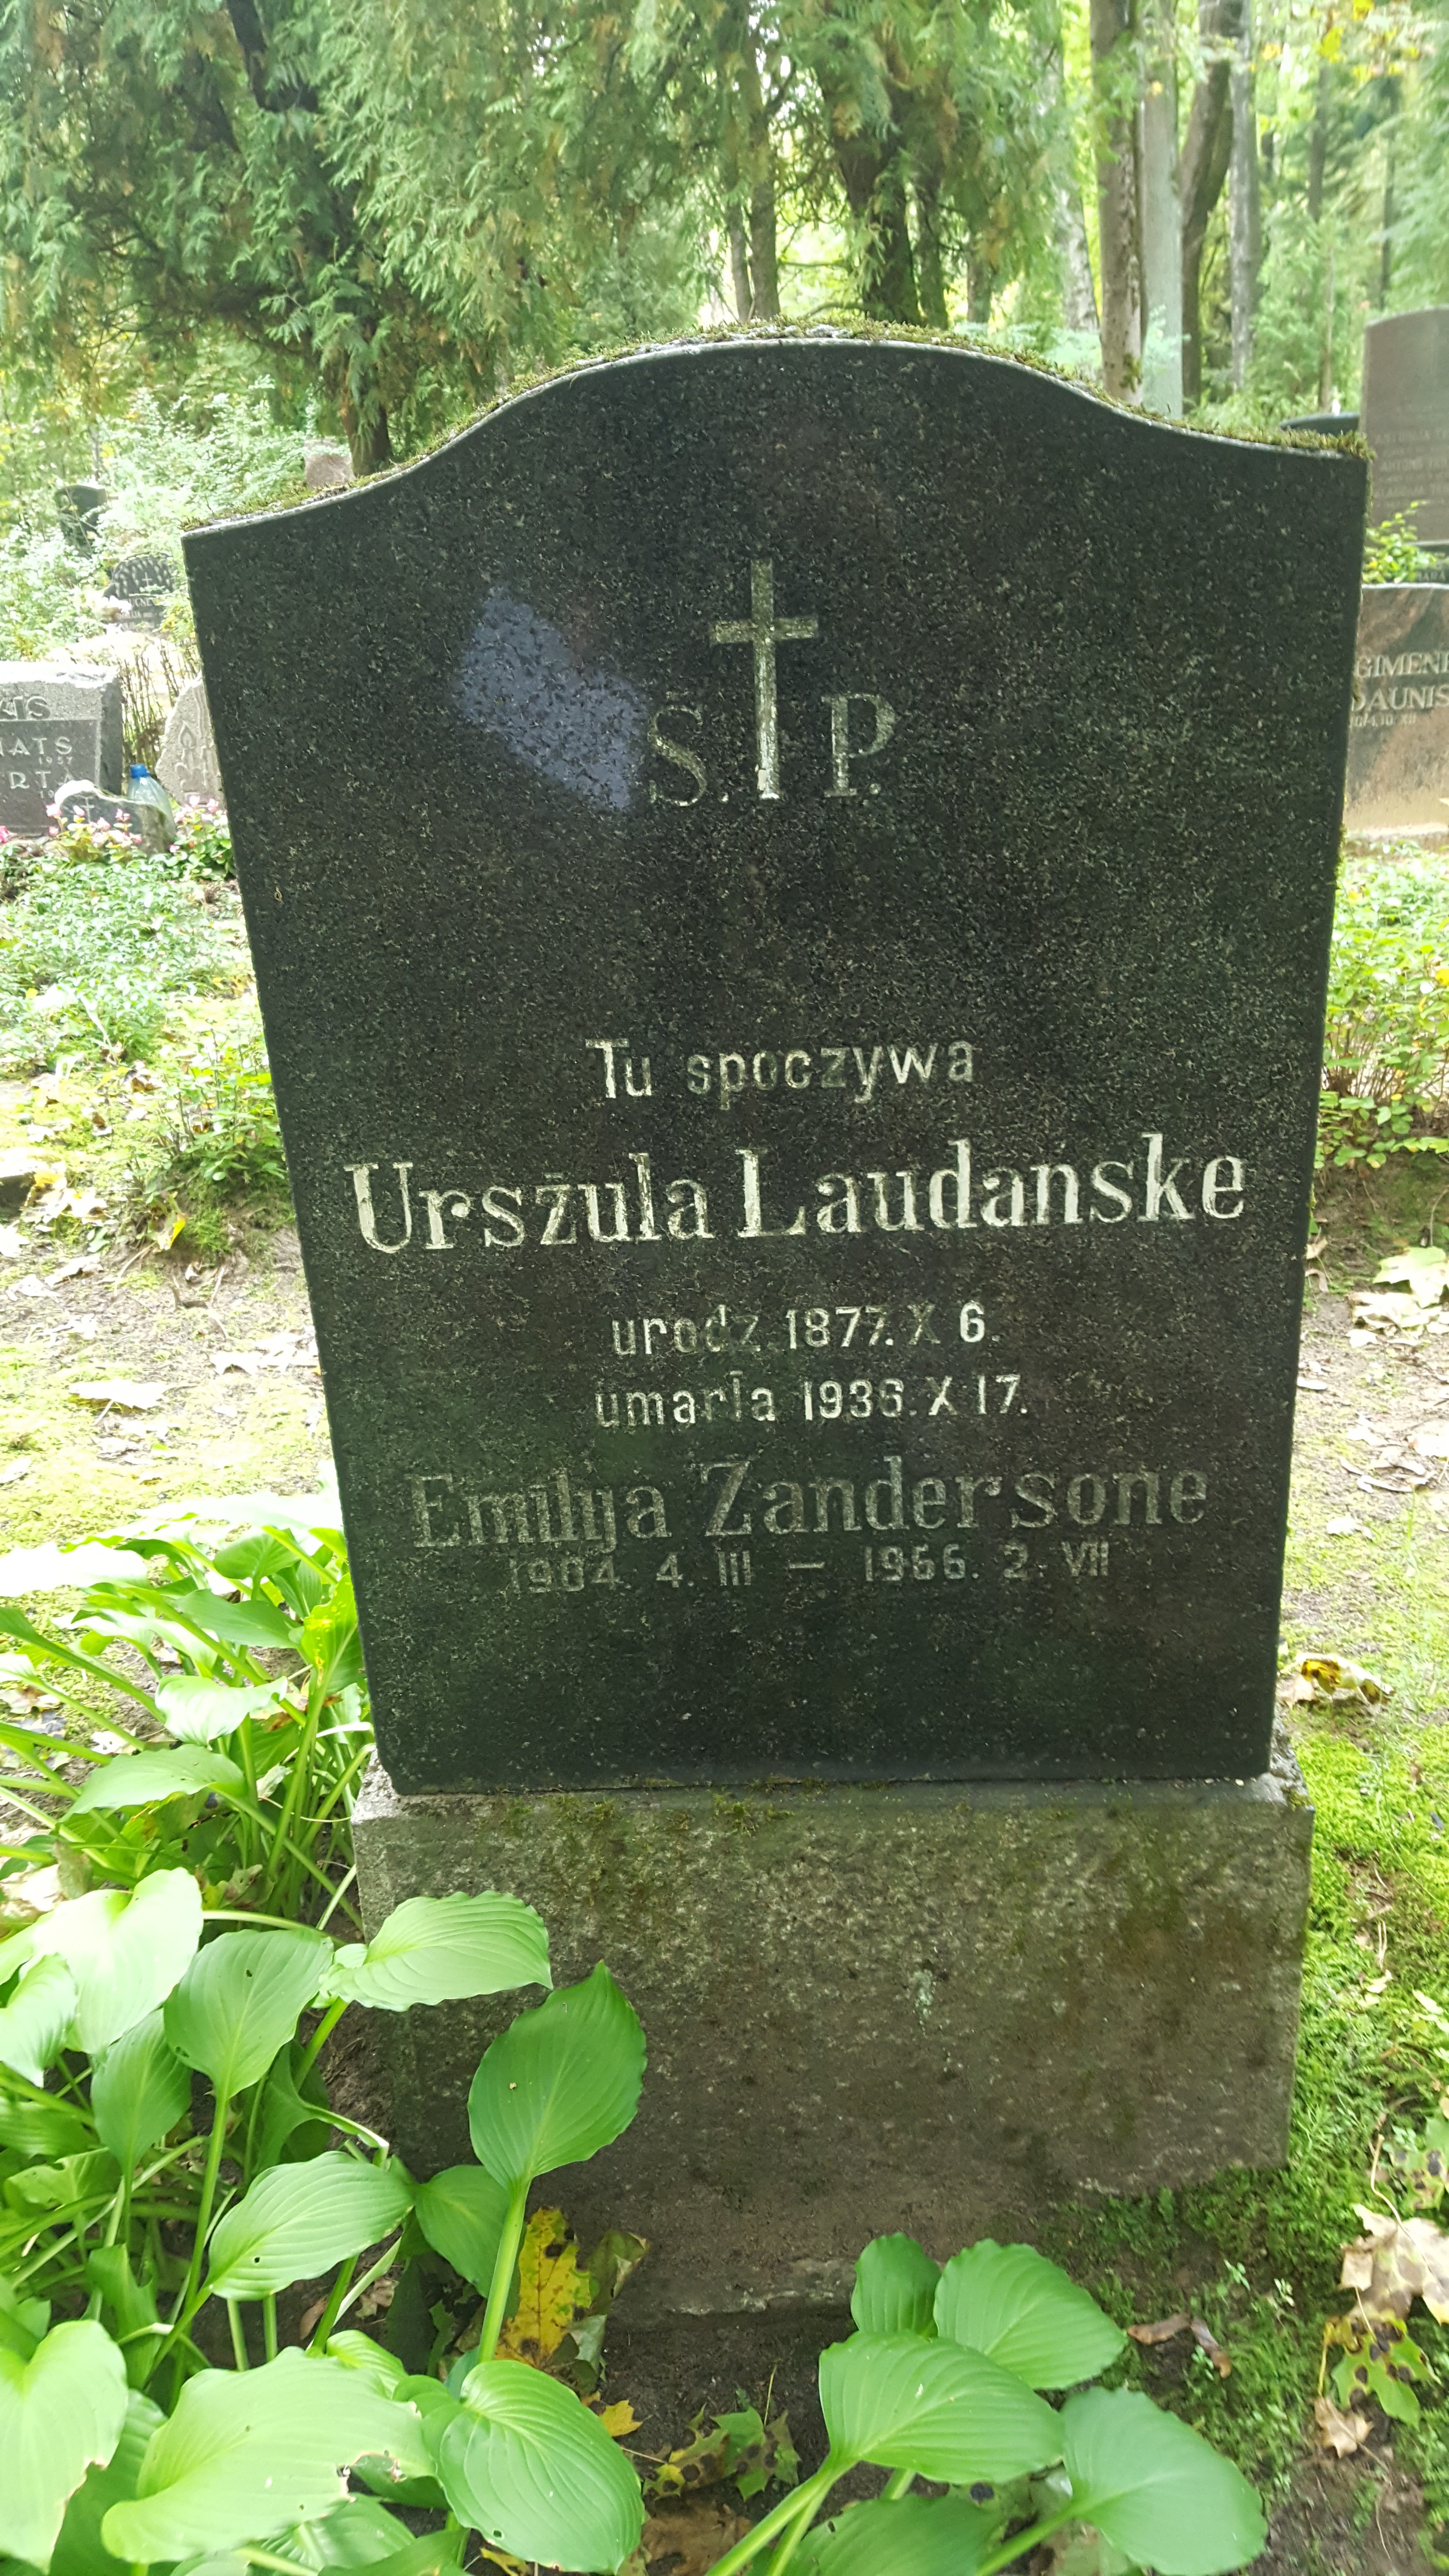 Napis z nagrobka Urszuli Laudanske i Emiliji Zandersone, cmentarz św. Michała w Rydze, stan z 2021 r.